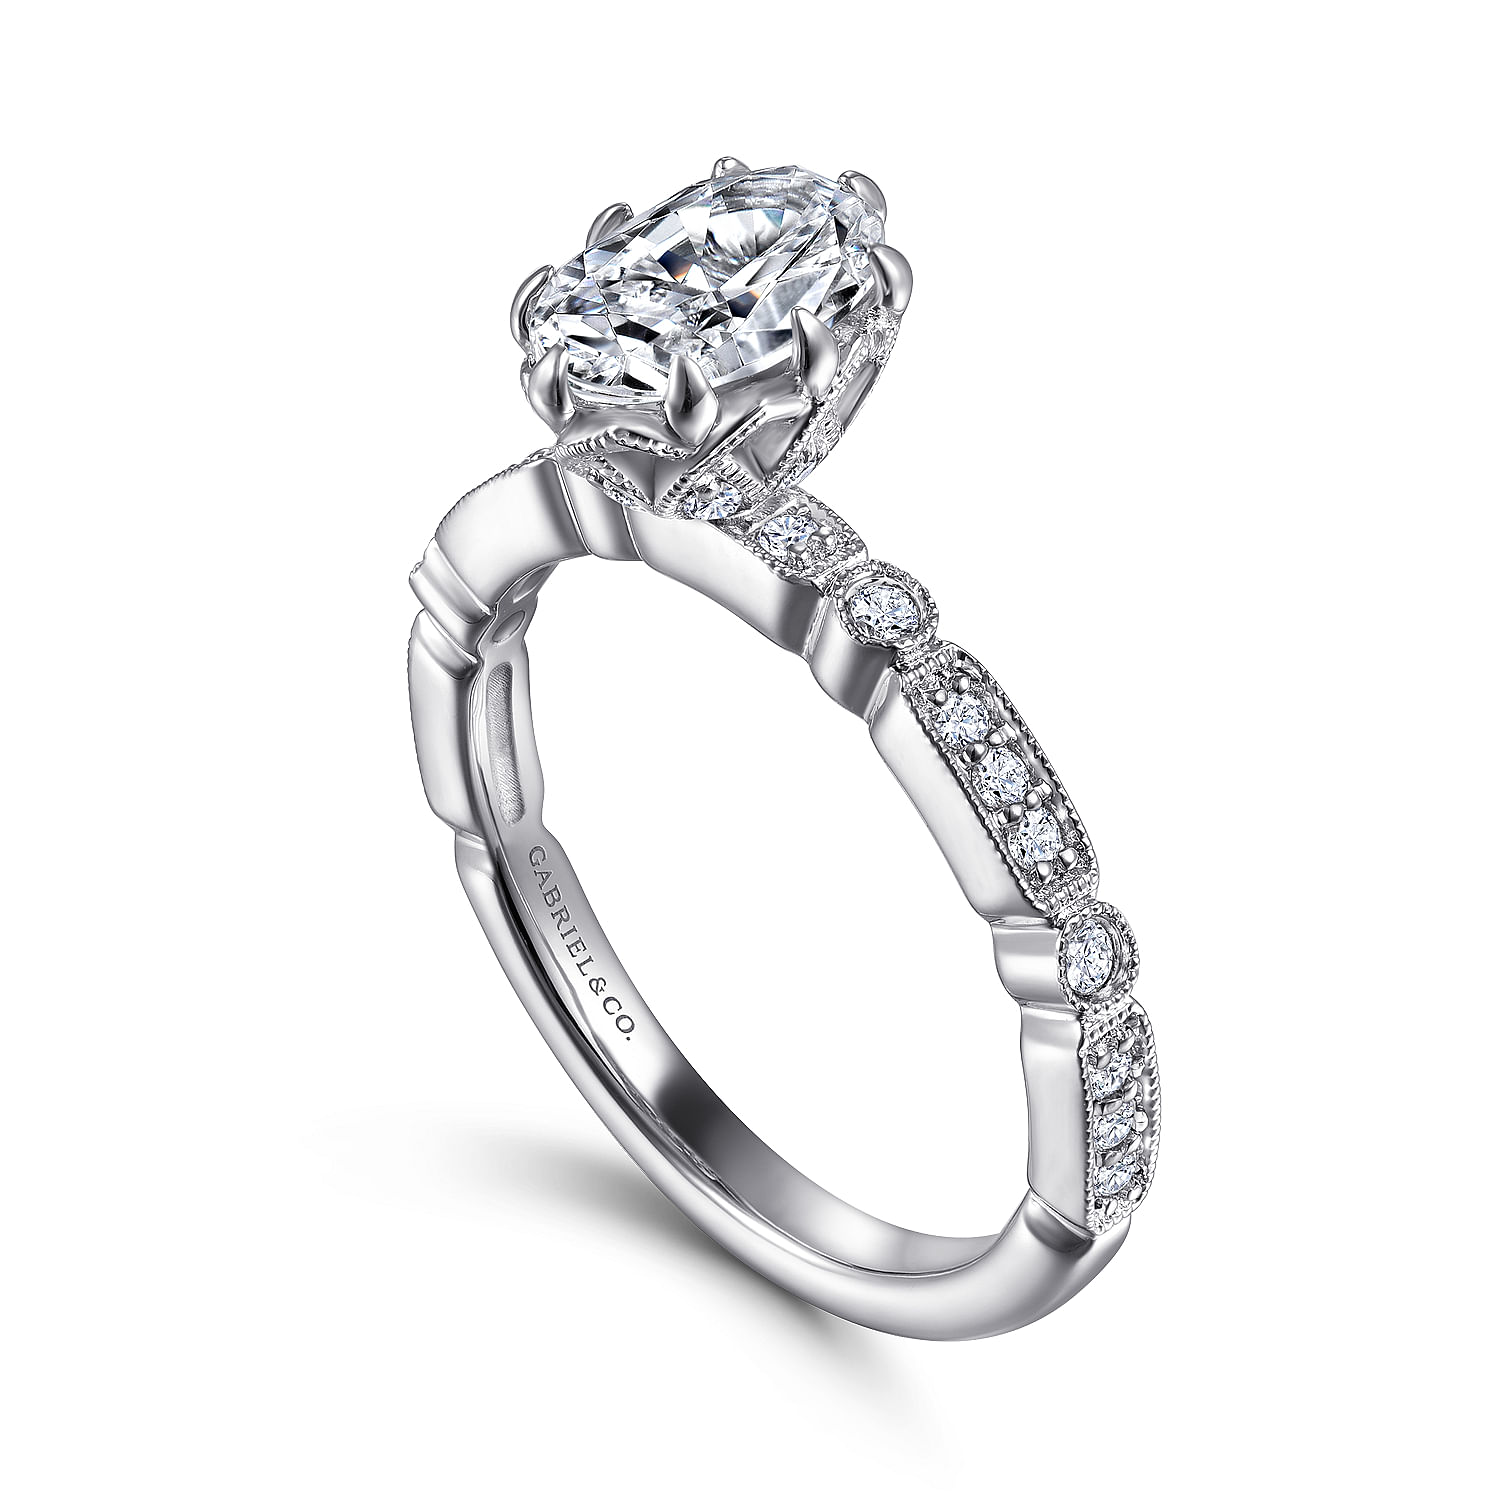 Vintage Inspired 14K White Gold Oval Diamond Engagement Ring